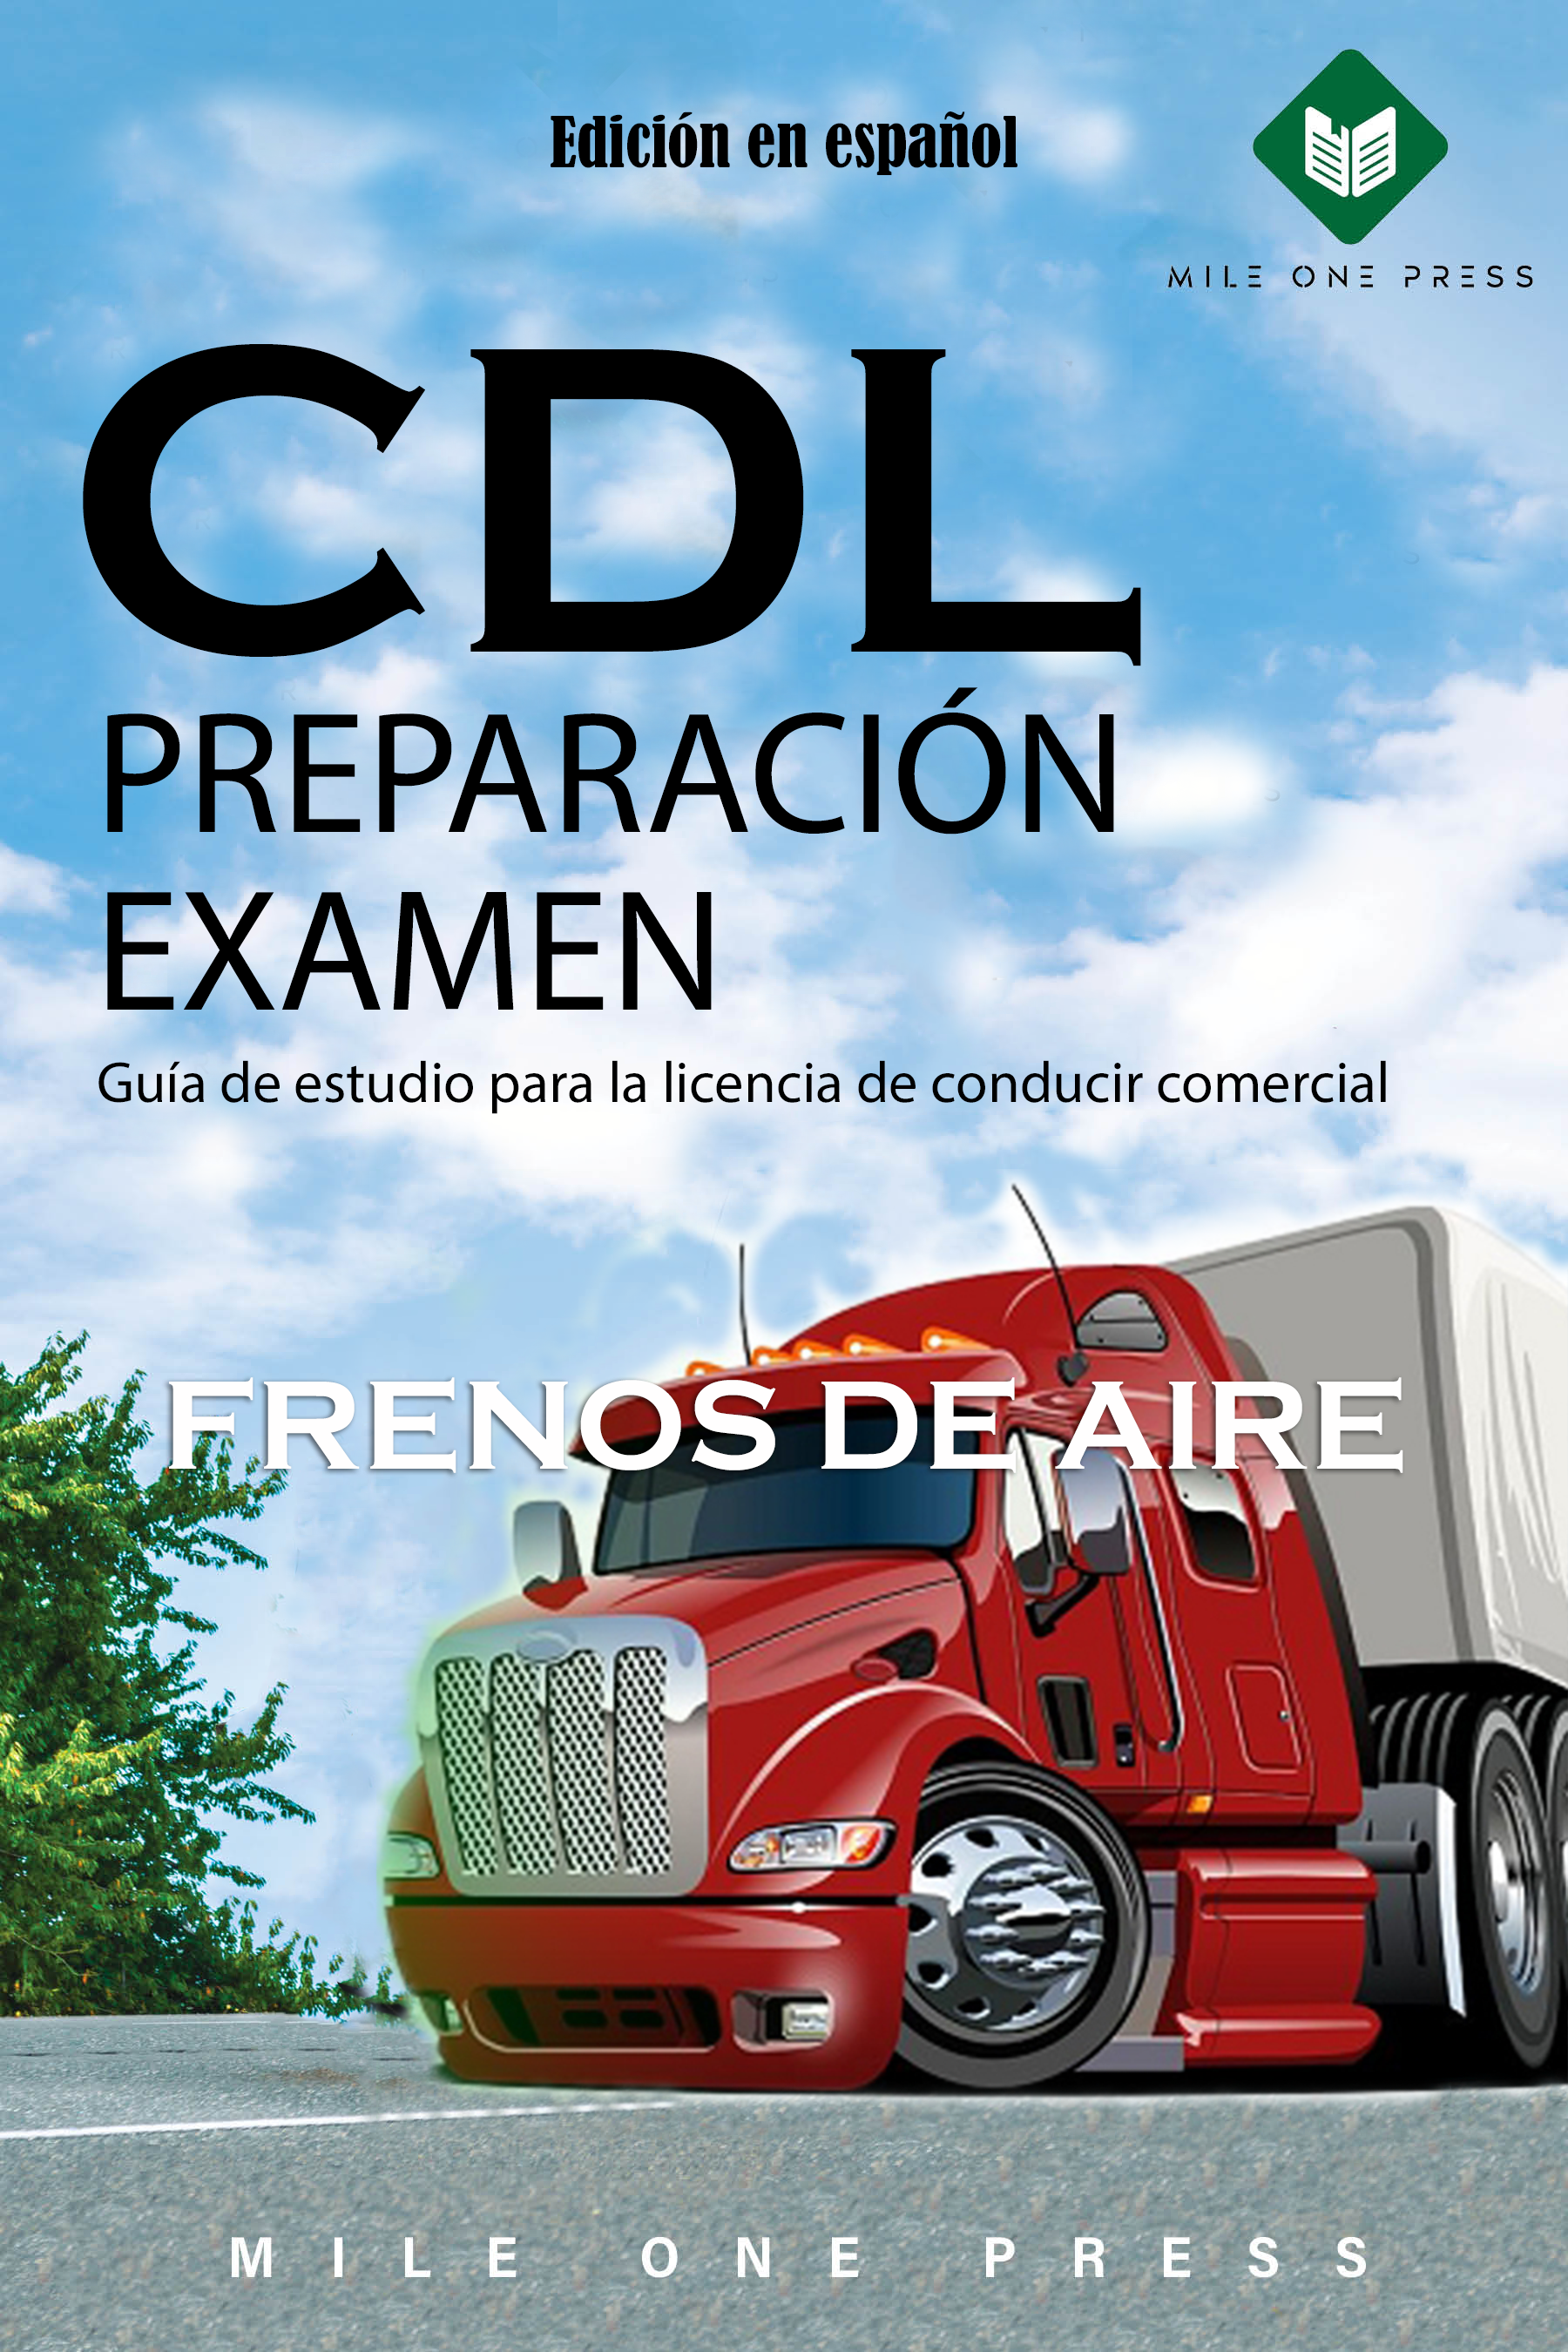 Examen de preparación para la CDL: Frenos de aire